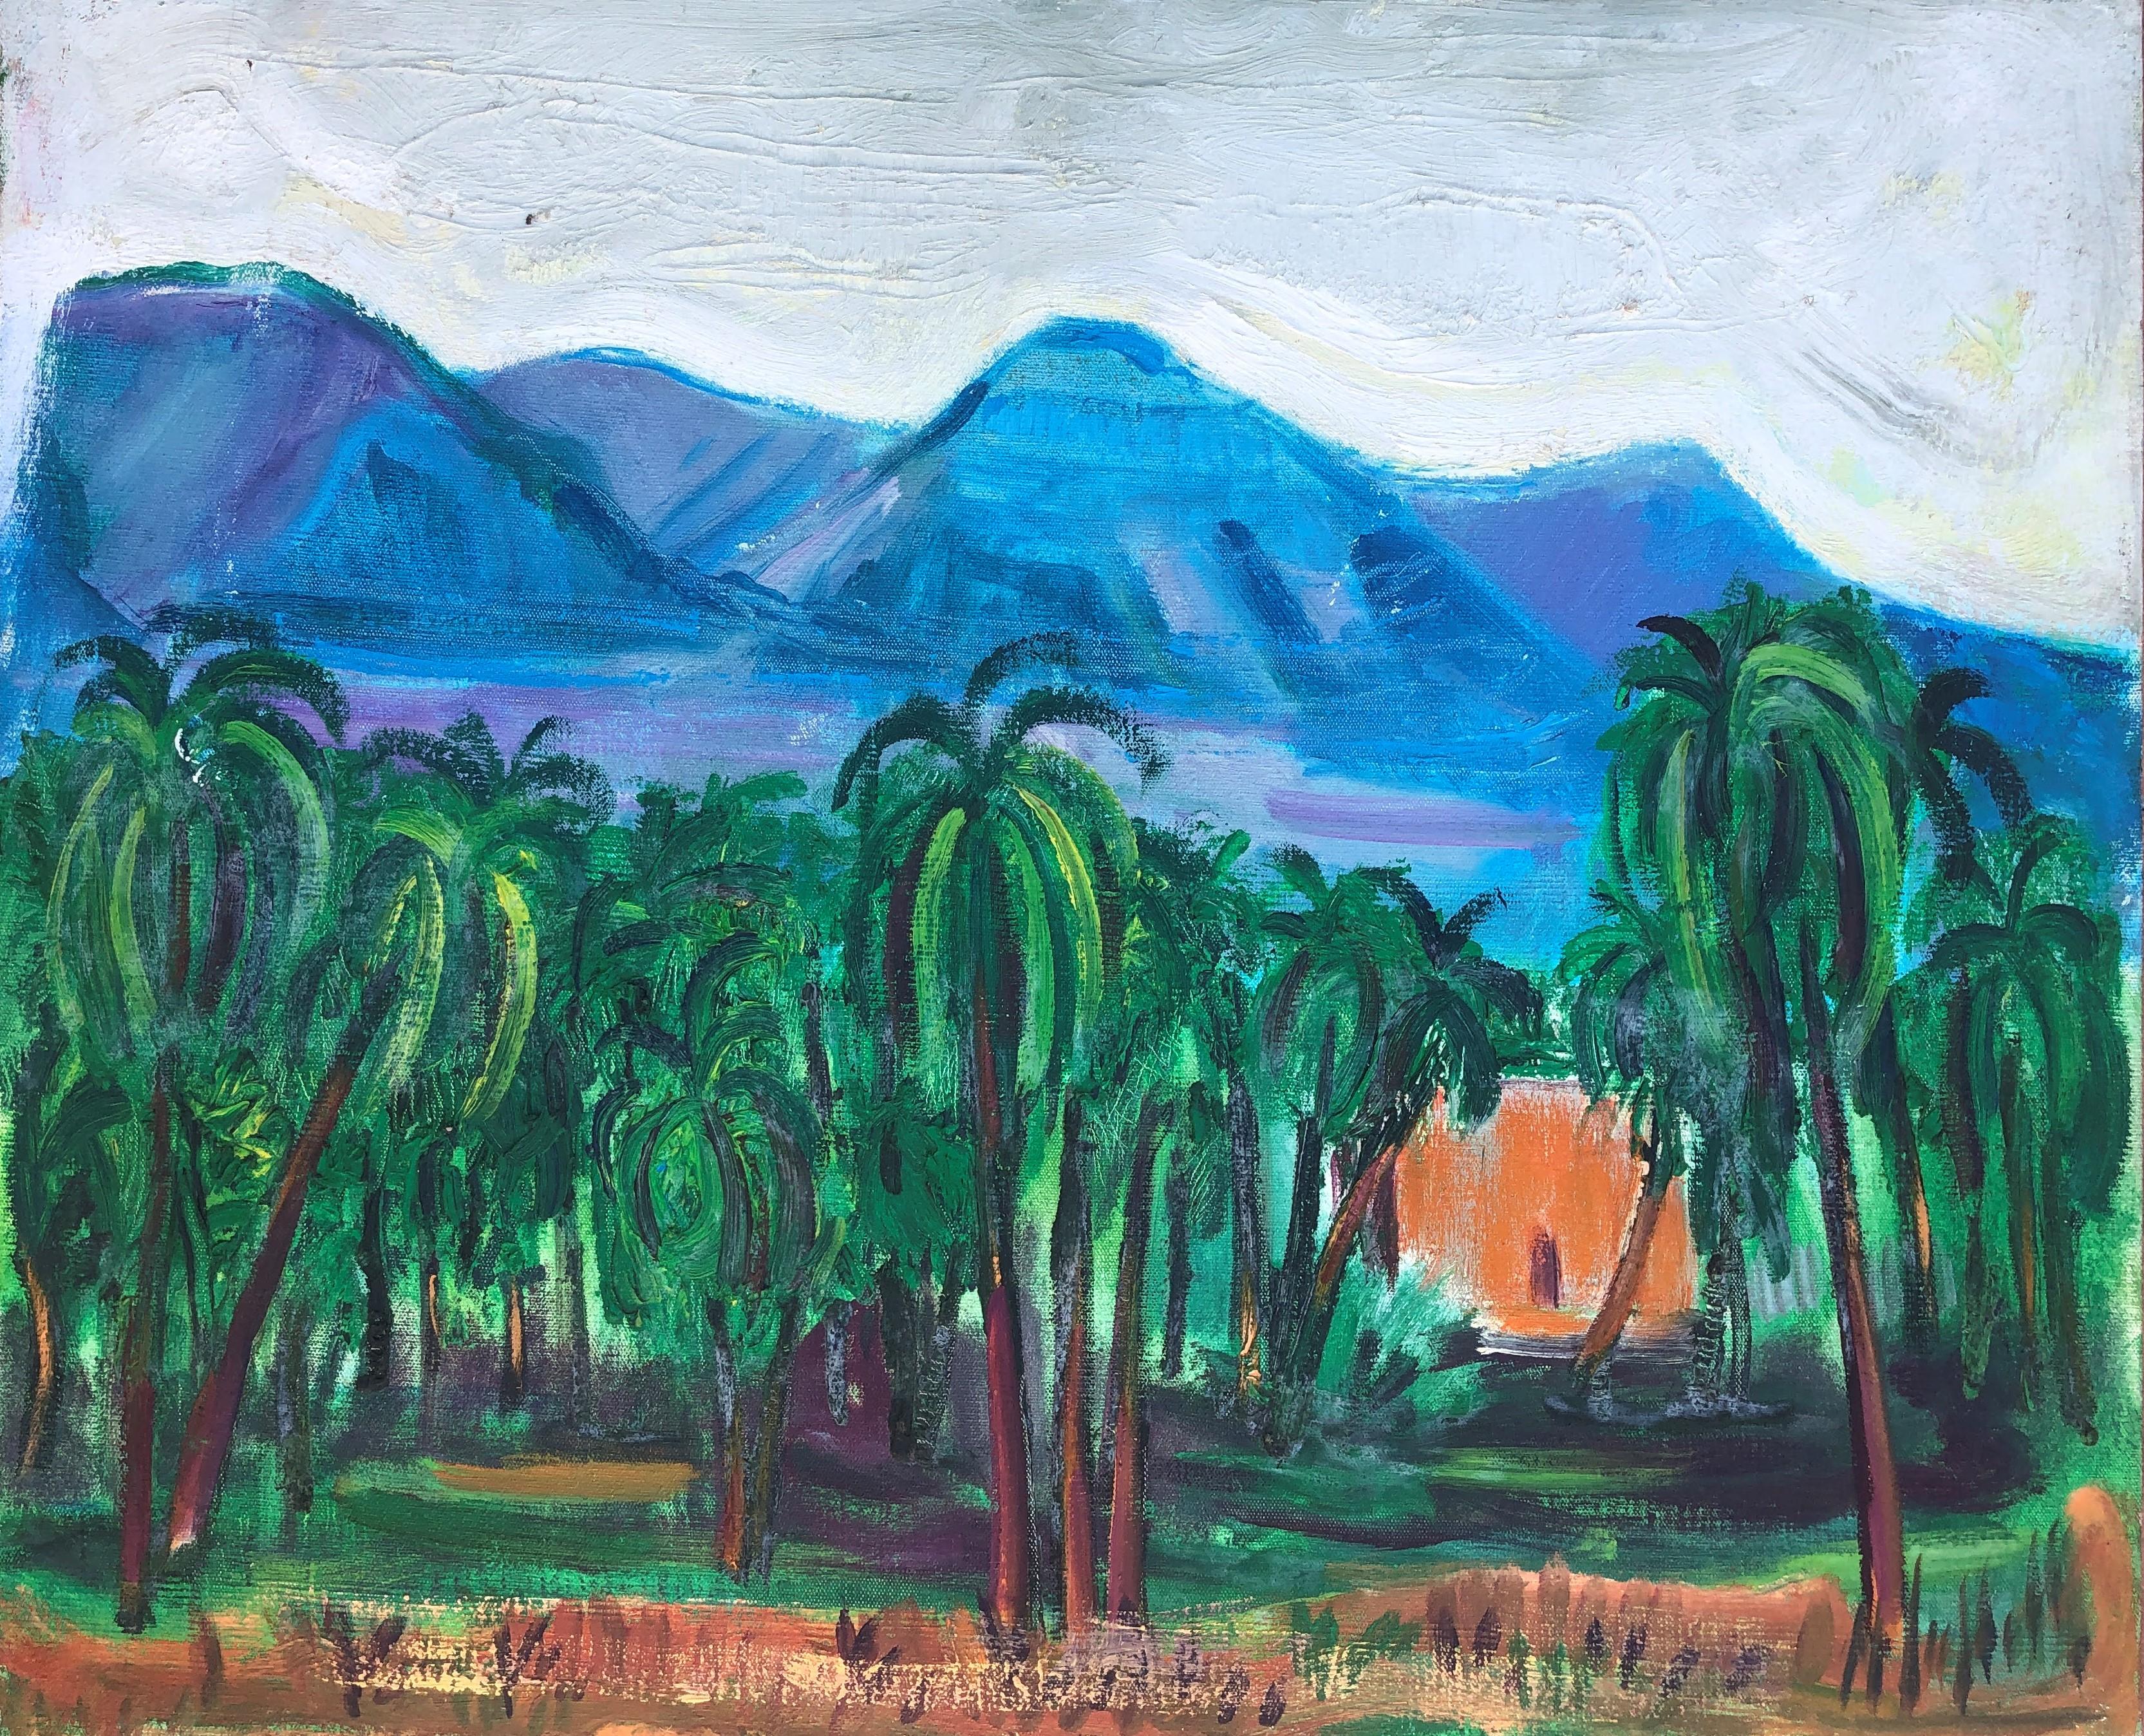 Manuel Capdevila Massana Landscape Painting - Jericho Landscape original oil on canvas painting